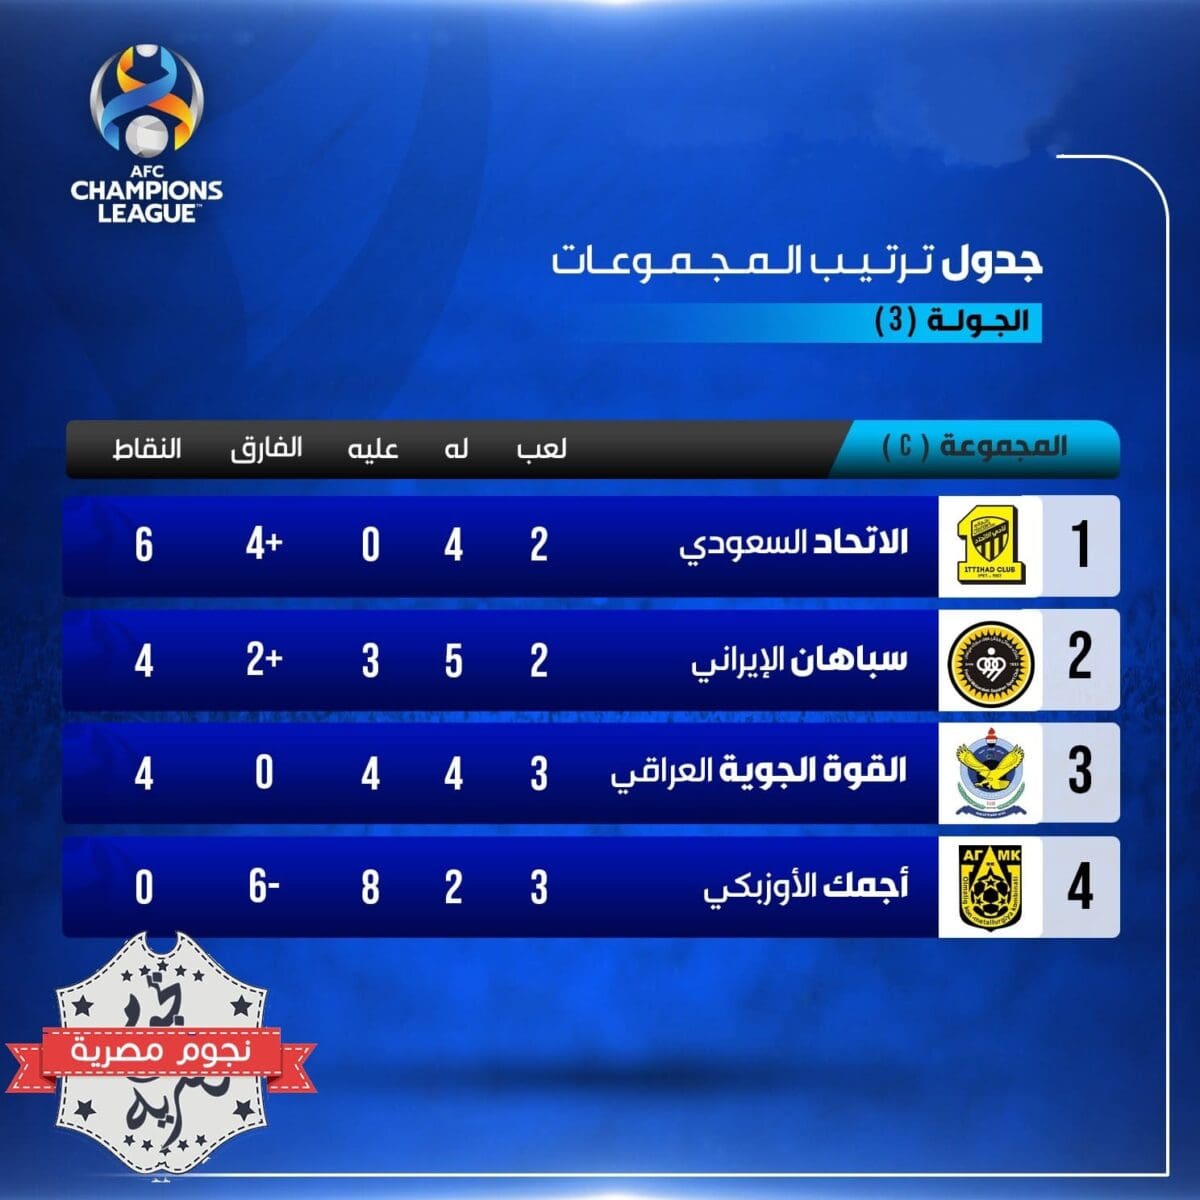 جدول ترتيب المجموعة الثالثة C في دوري أبطال آسيا بعد نهاية الجولة 3 (المصدر. القنوات الرياضية السعودية)